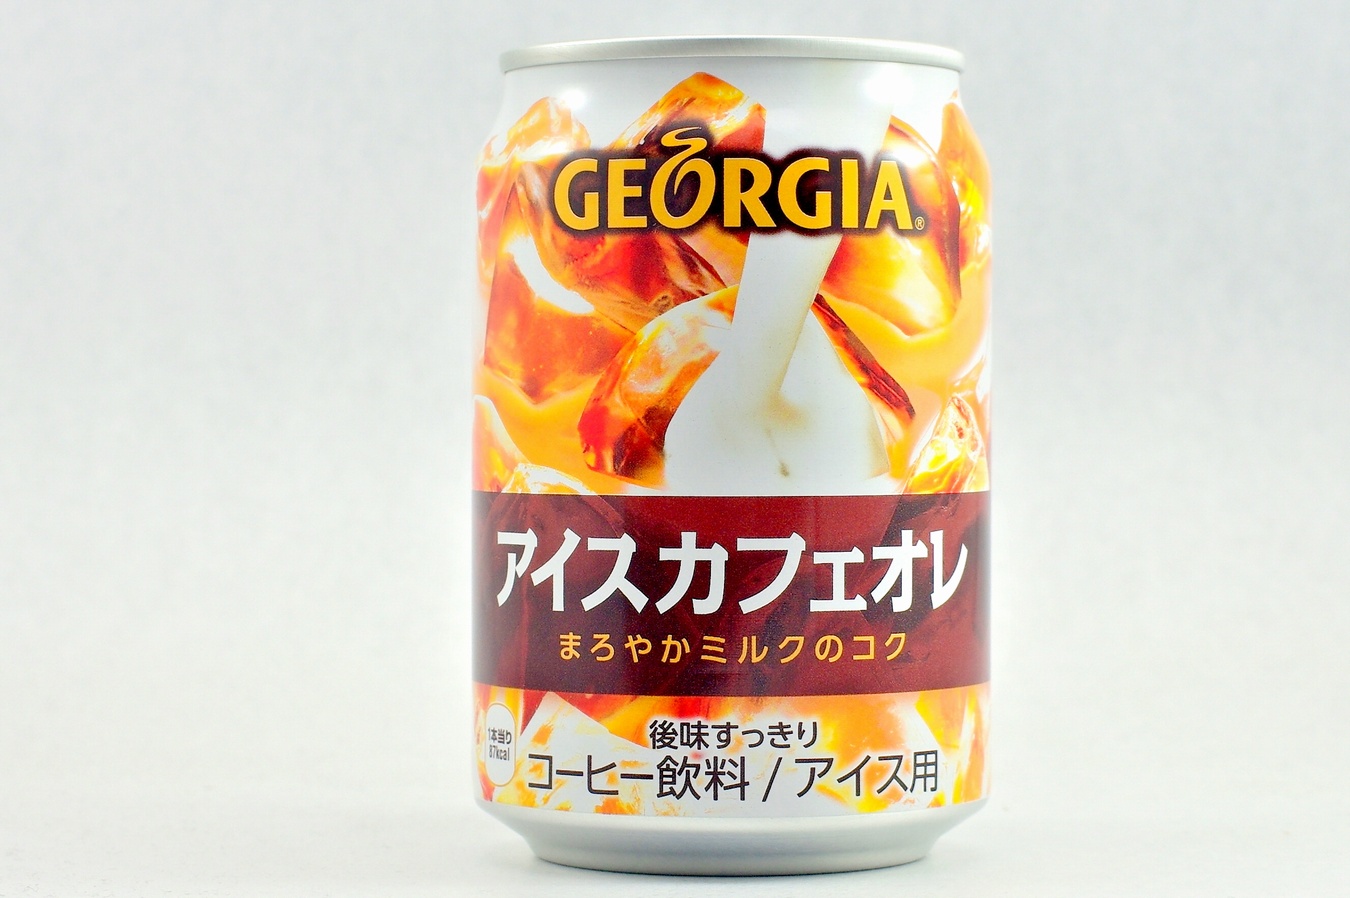 GEORGIA アイスカフェオレ アルミ缶 2015年4月